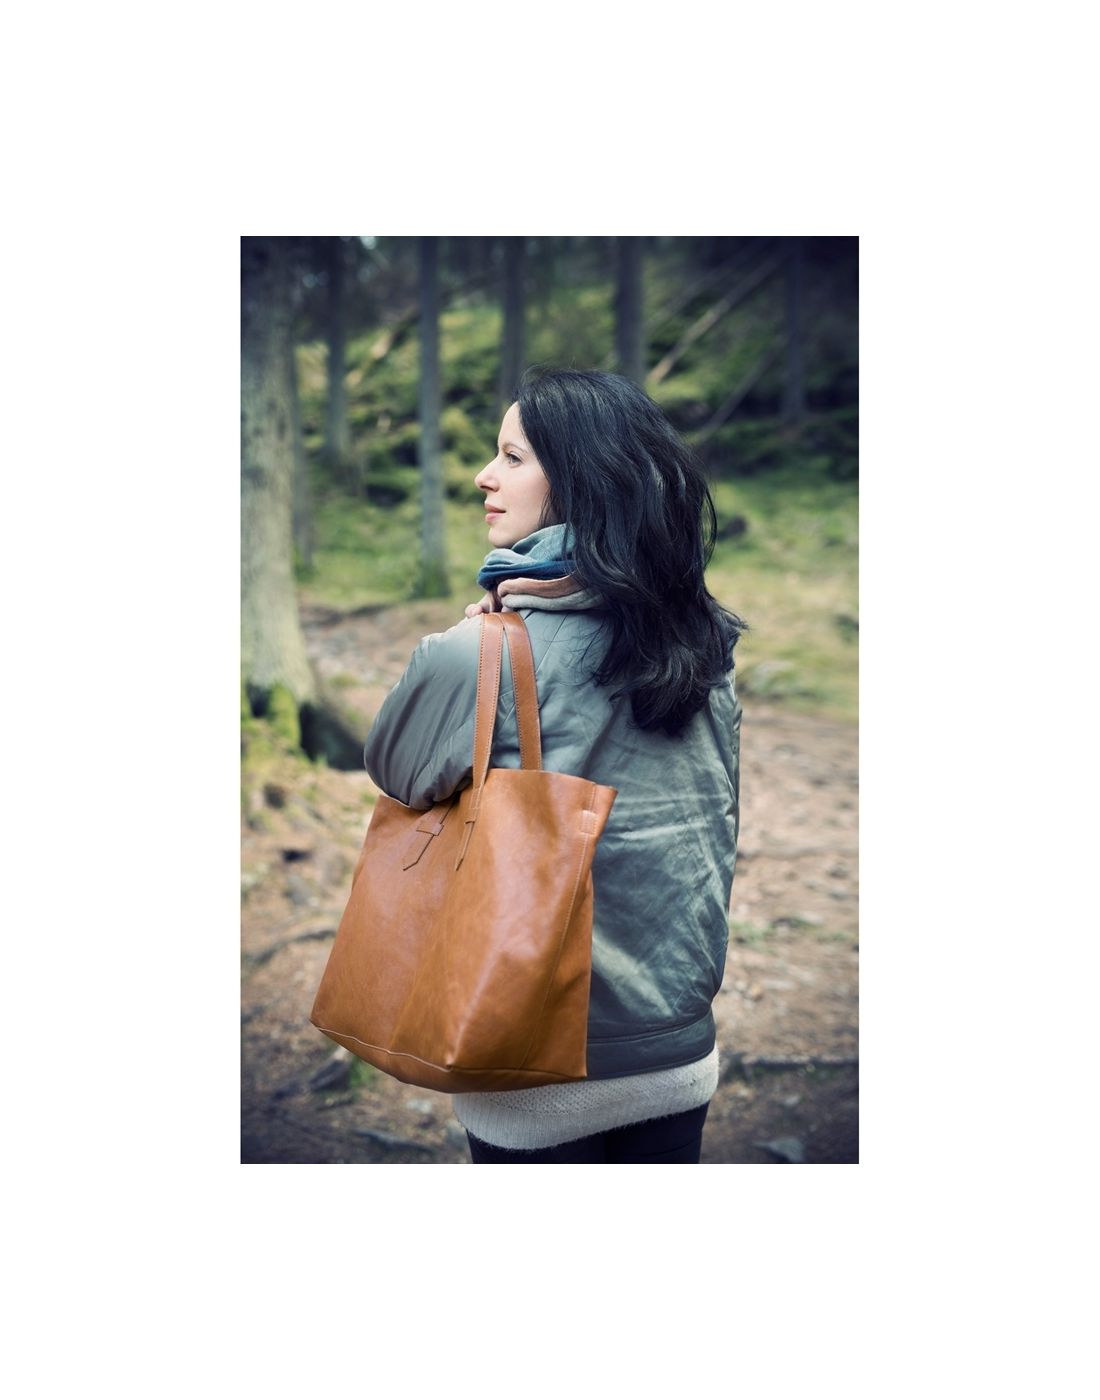 Τσάντα αλλαγής Elodie Details Chestnut Leather